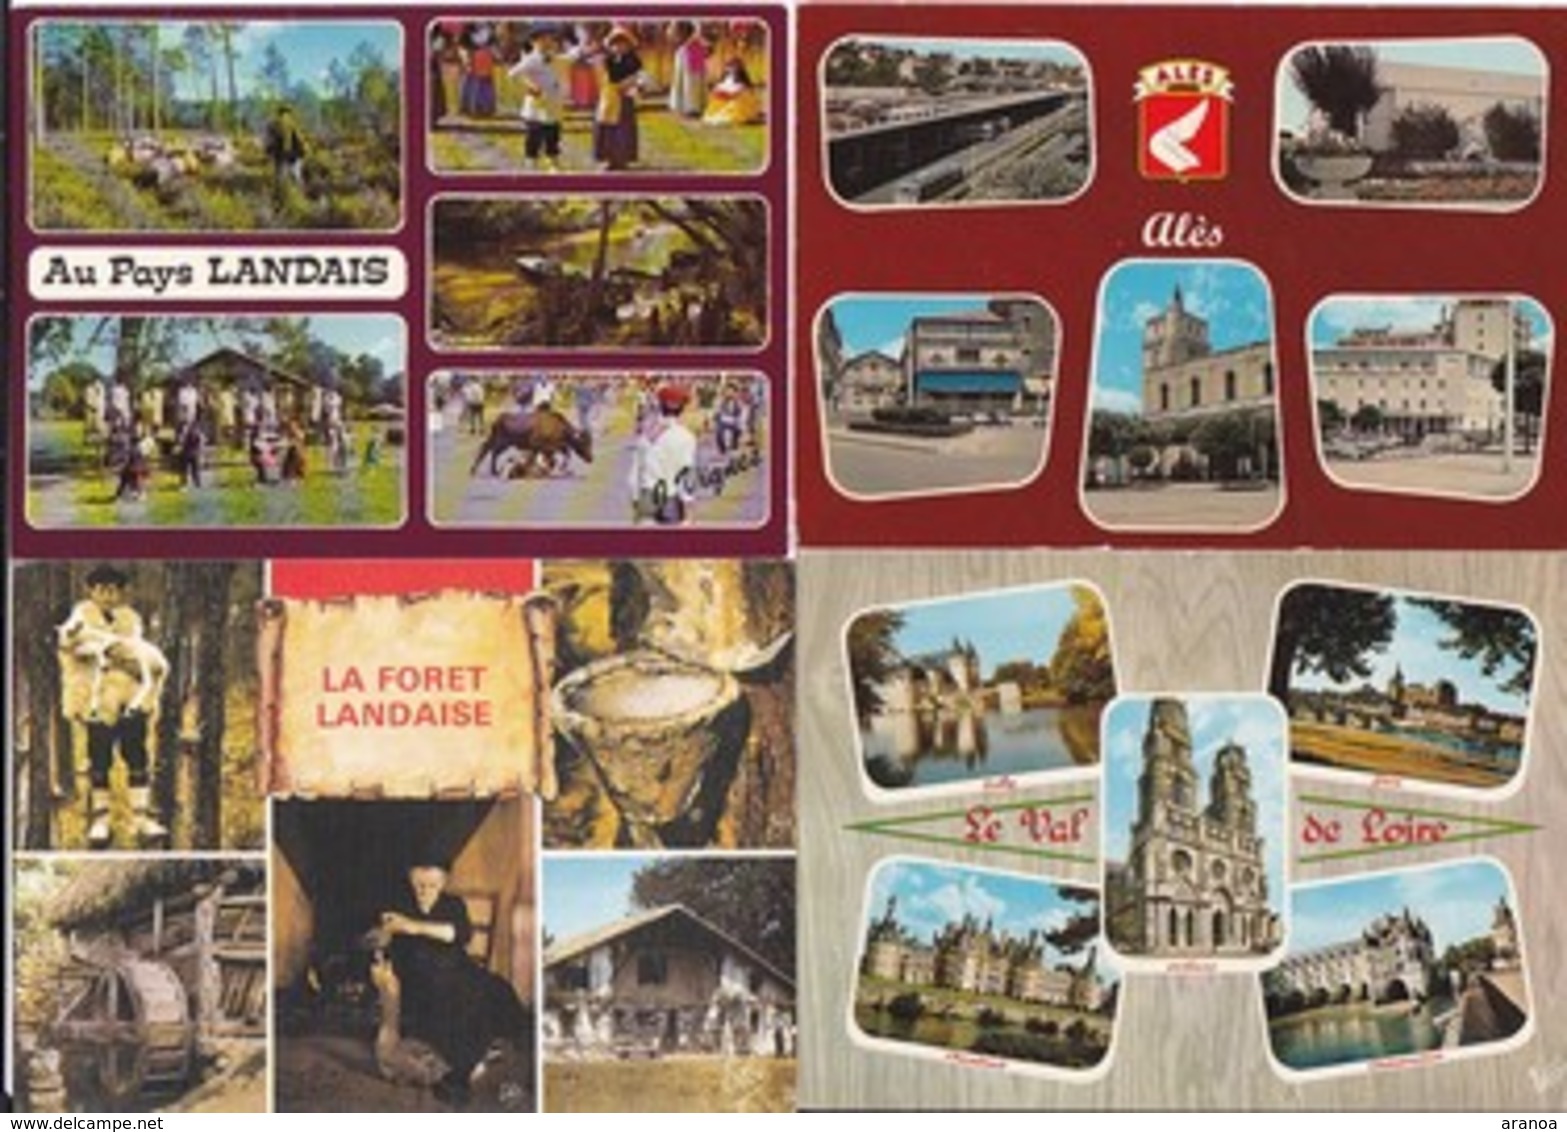 France -- Départements différents (02) -- Multivues -- Lot de 80 cartes